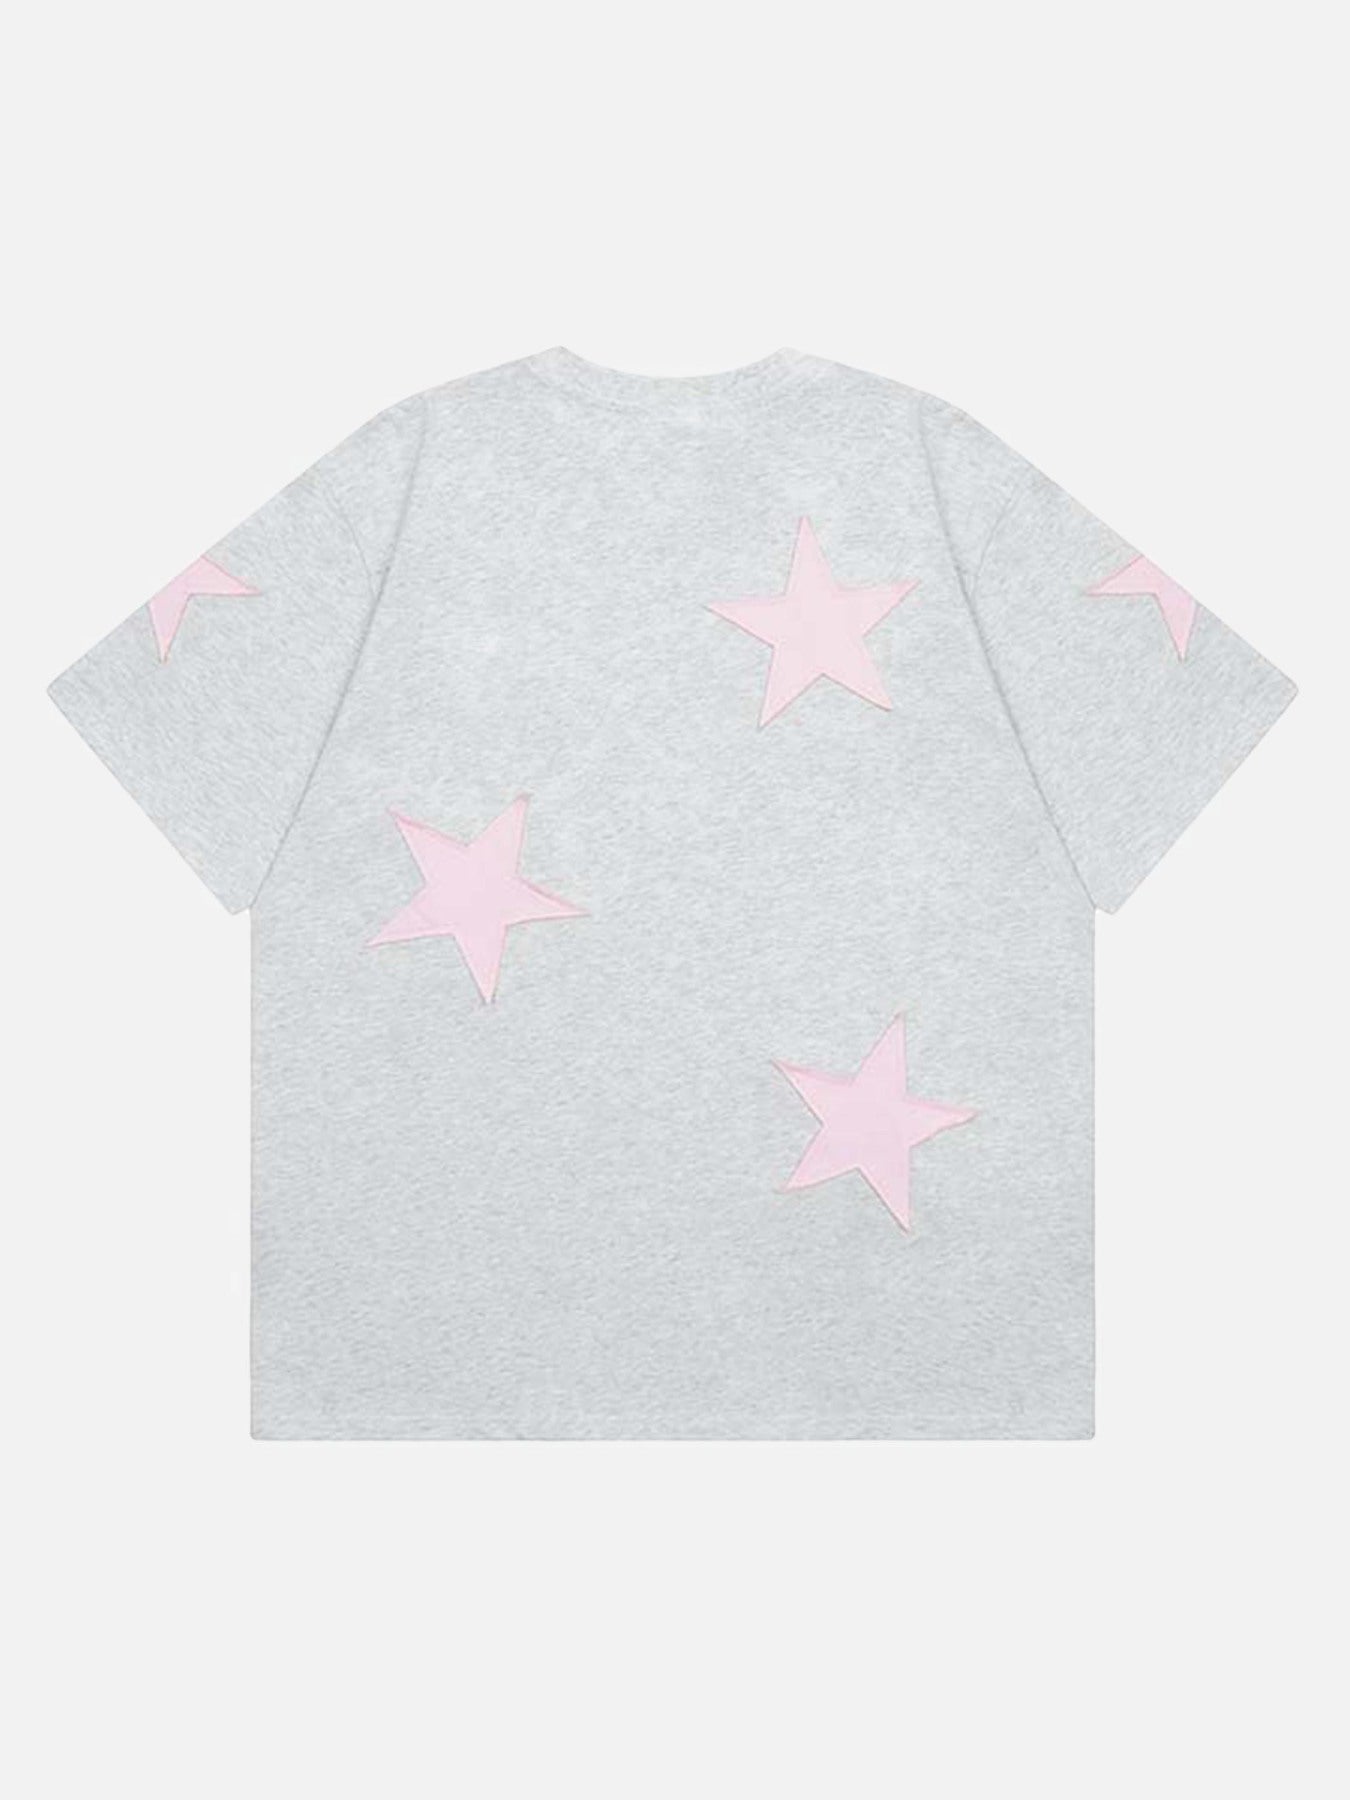 Thesupermade Retro Star T-shirt